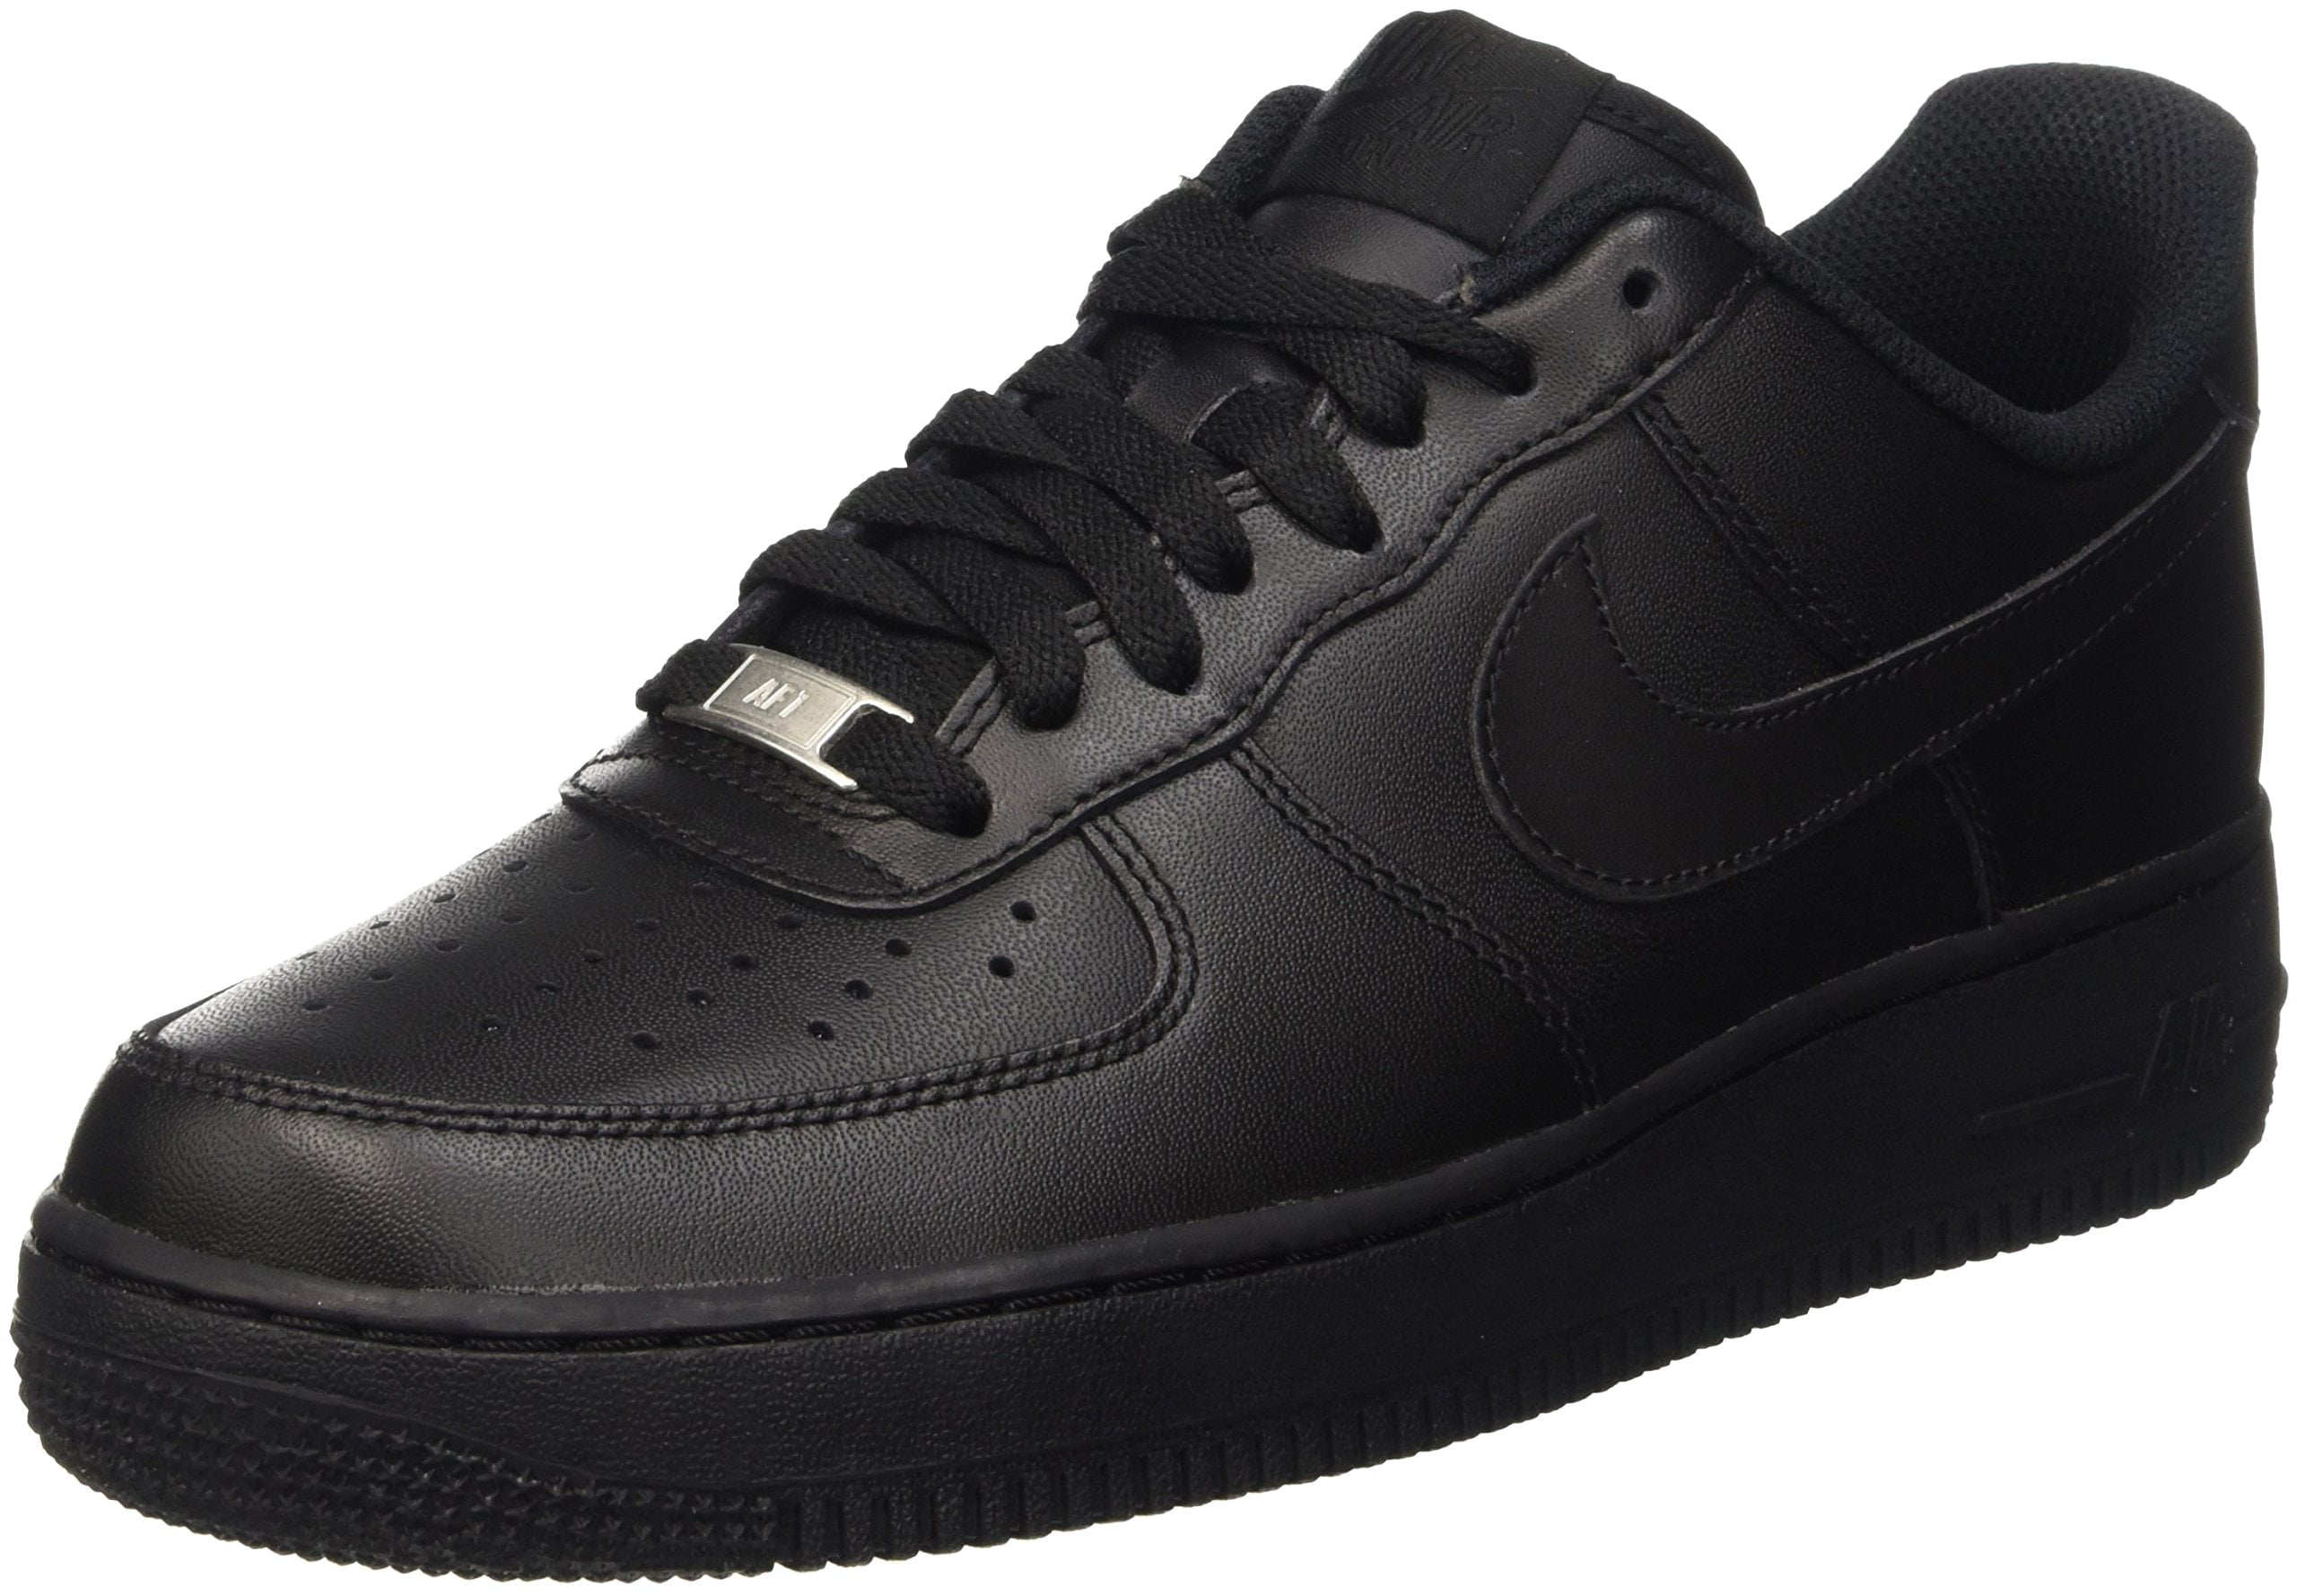 Black Trainers & Shoes. Nike AU